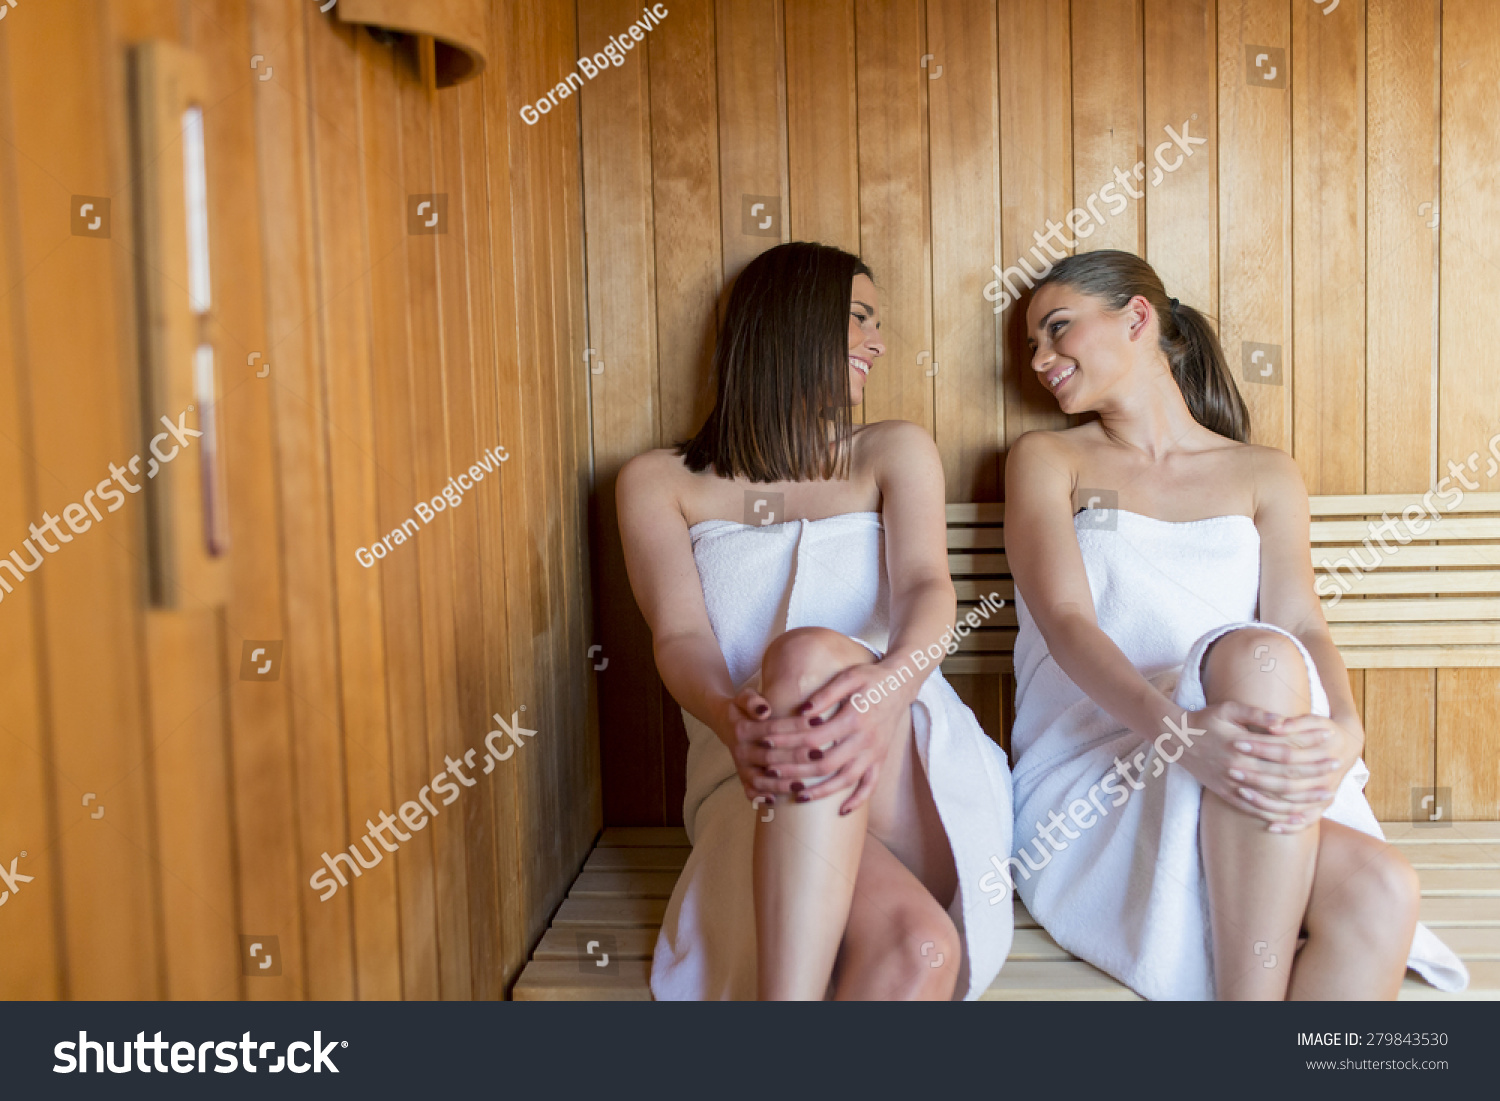 фото скрытое женщин в бане